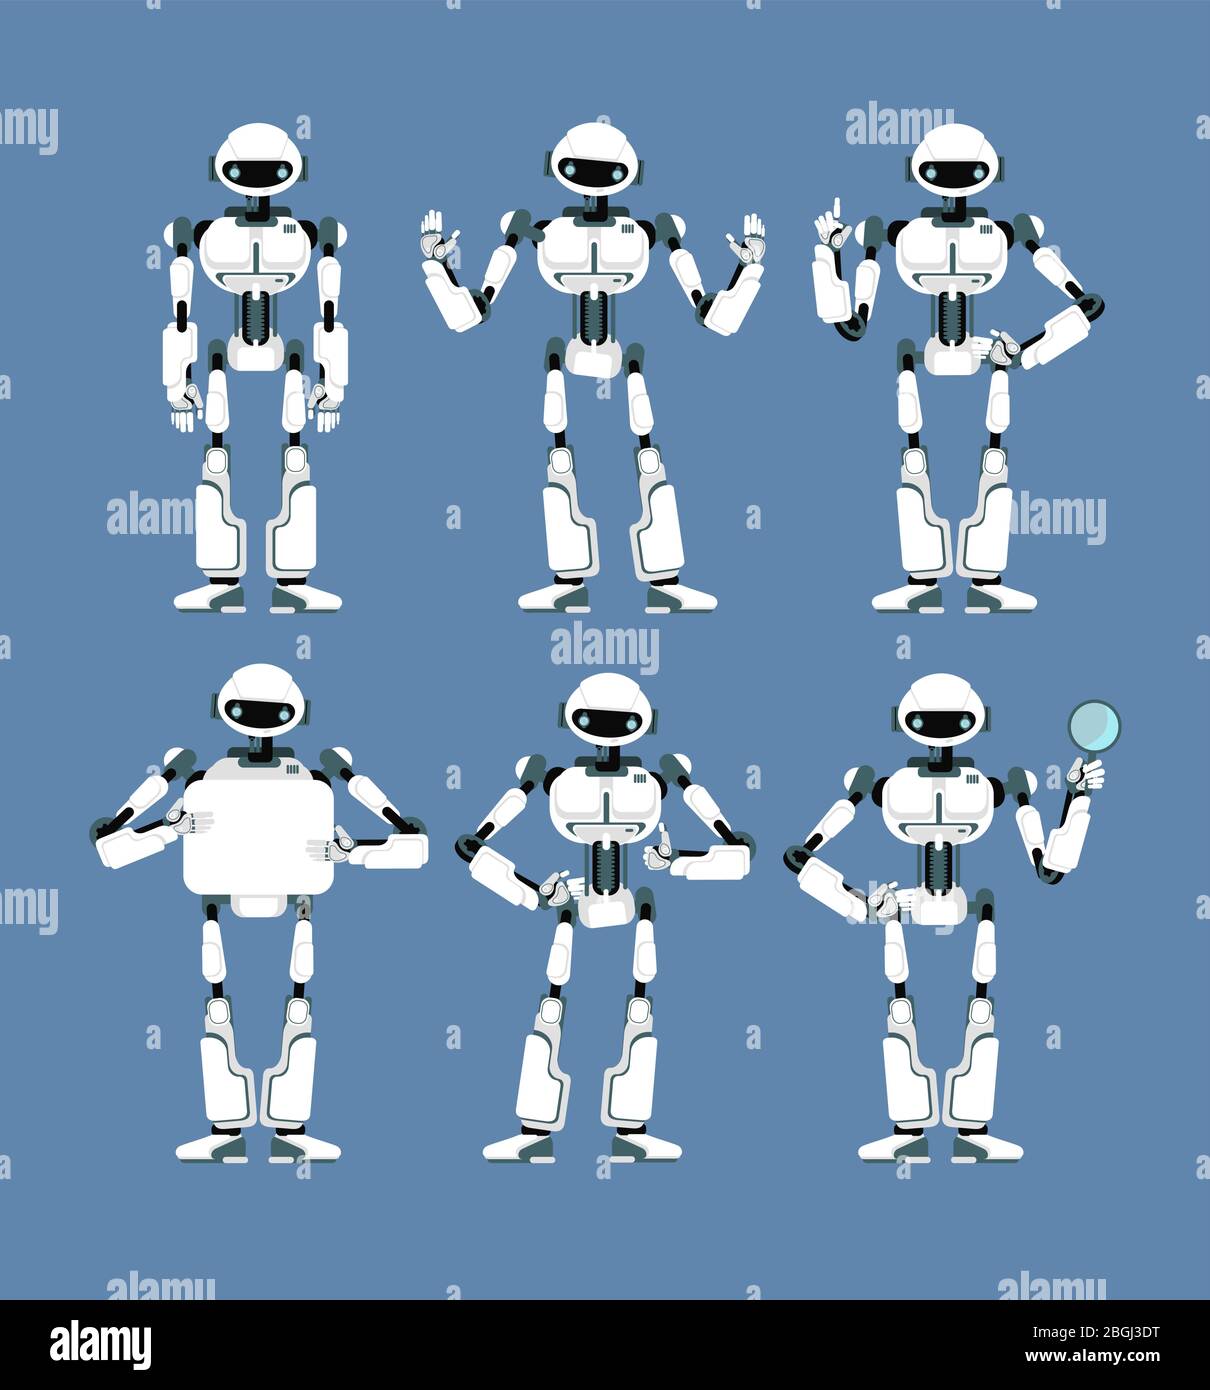 Kybernetischer Roboter android mit bionischen Armen und Augen in verschiedenen Posen. Niedlichen Cartoon-scifi humanoiden Maskottchen Set. Sammlung von künstlichen Roboter futuristisch, Vektor-Illustration Stock Vektor